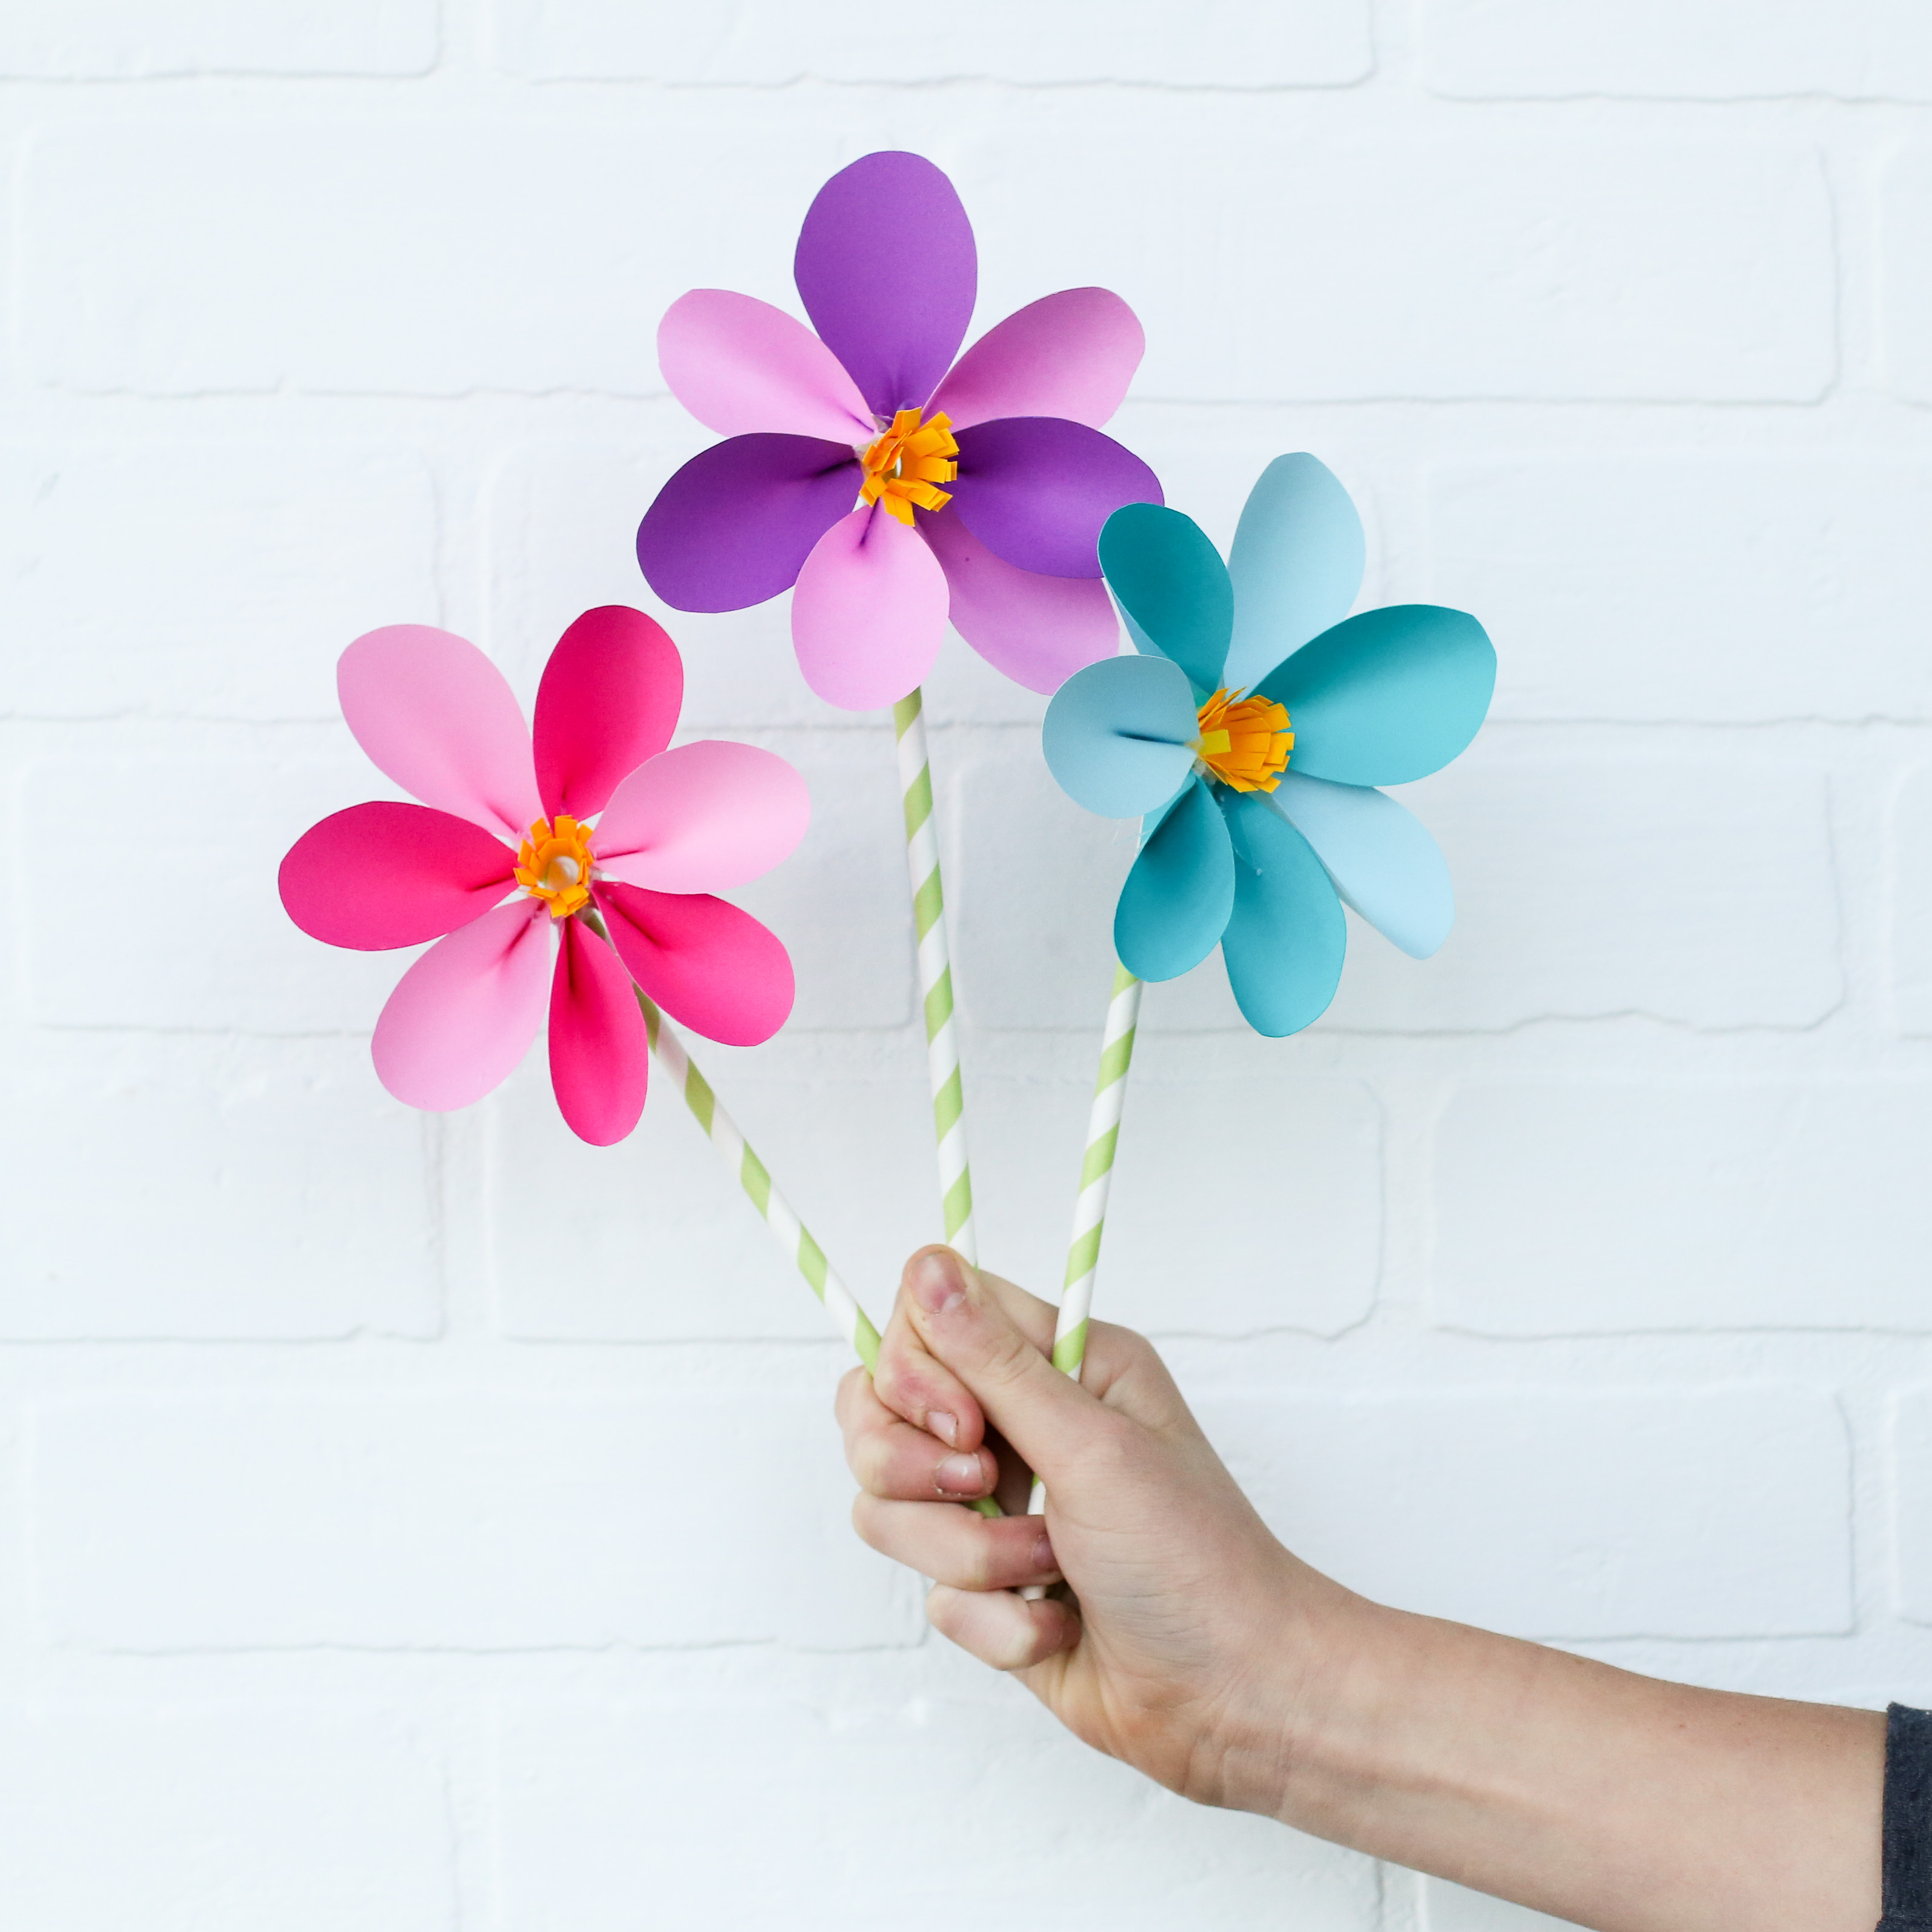 Handmade Paper Flowers For Kids